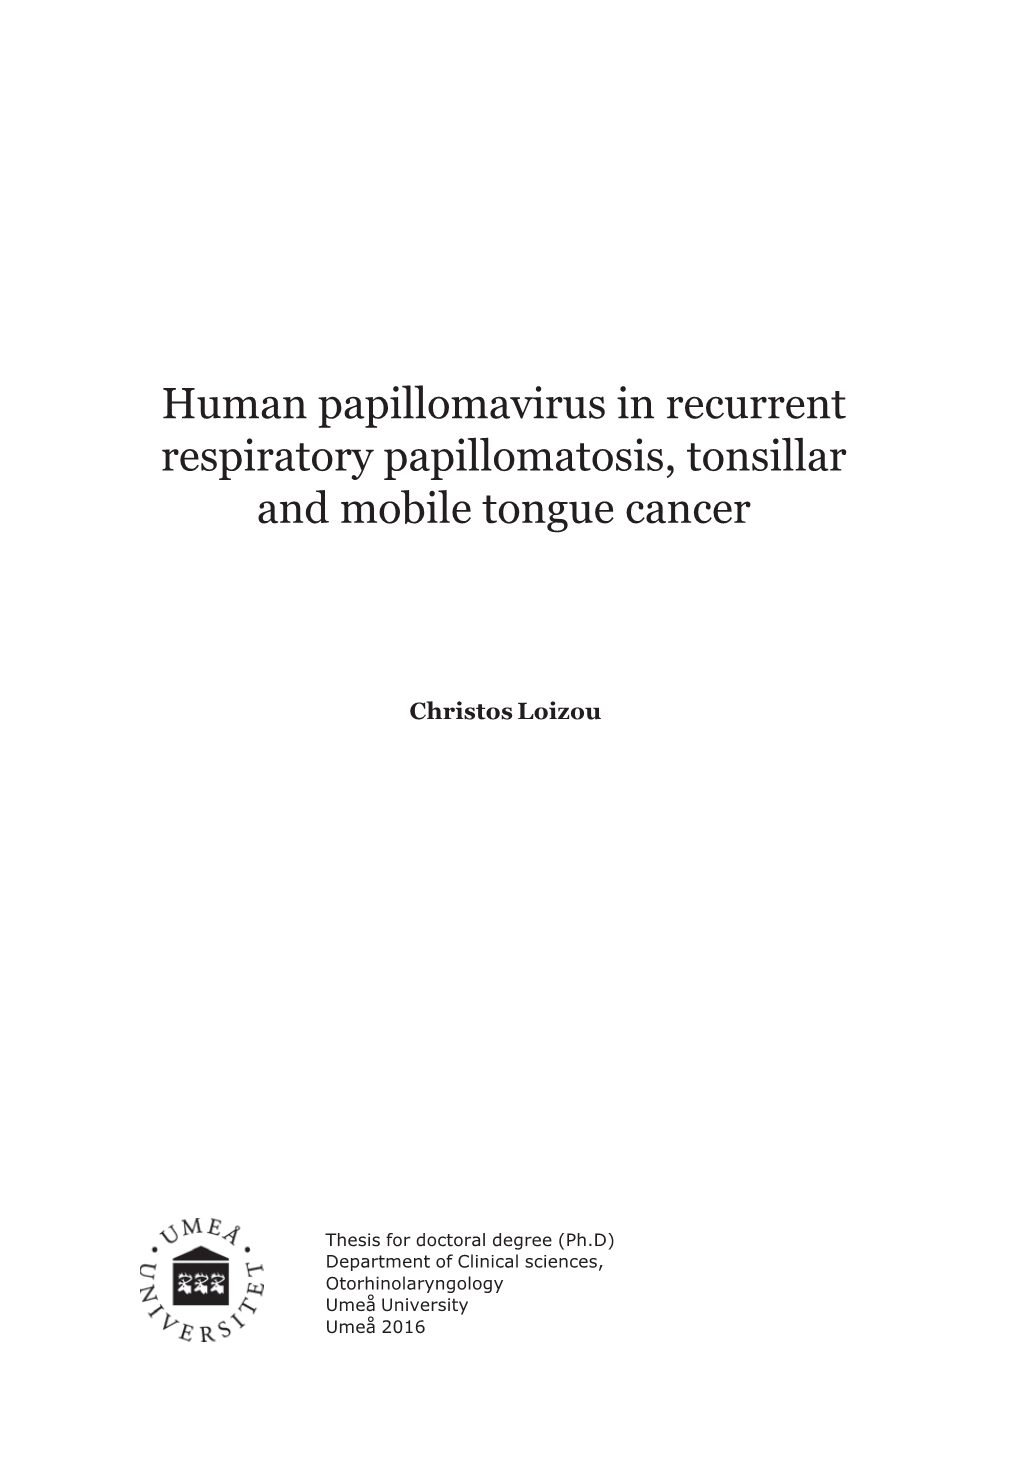 Human Papillomavirus in Recurrent Respiratory Papillomatosis, Tonsillar and Mobile Tongue Cancer